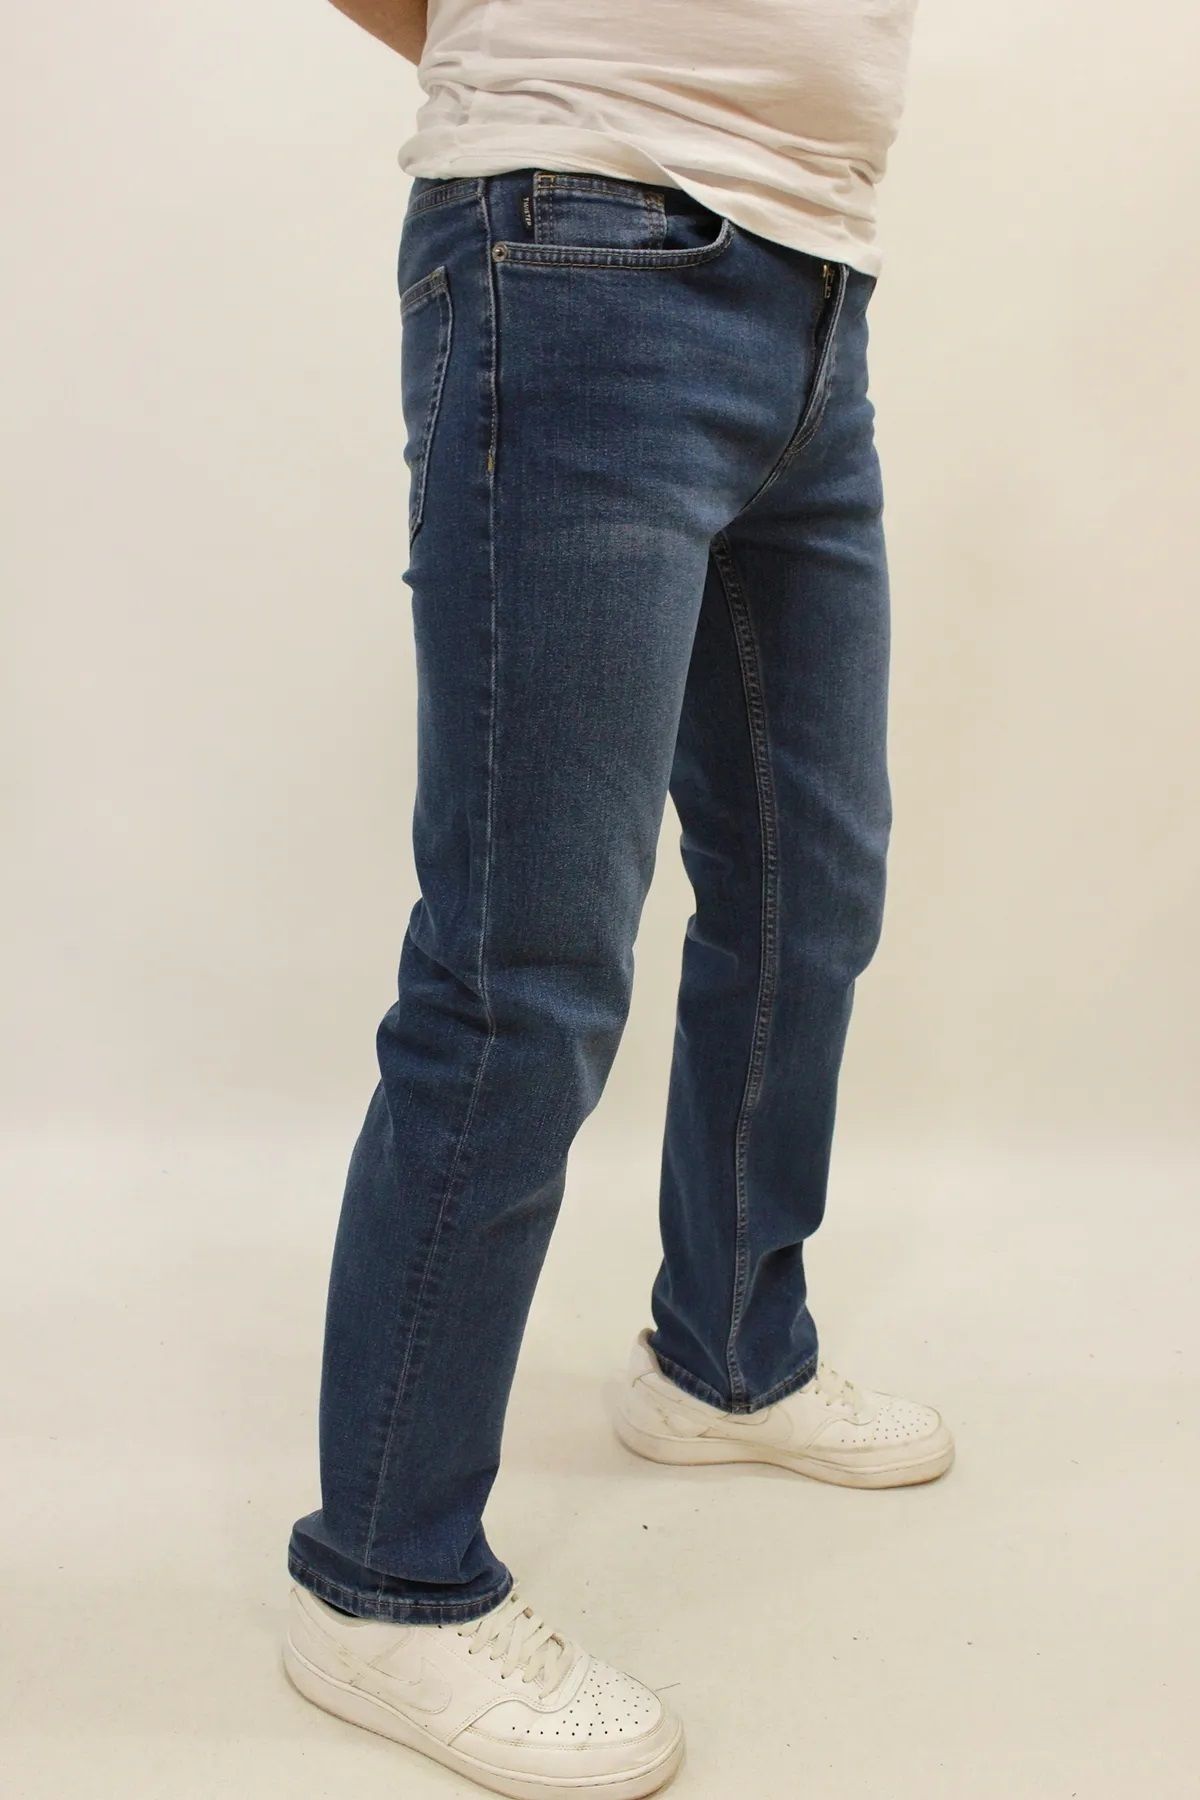 Twister Jeans ERKEK MAVİ TWİSTER JEANS RAHAT KALIP DÜZ PAÇA LİKRALI KOT PANTOLON MİLANO 717-01 BLUE